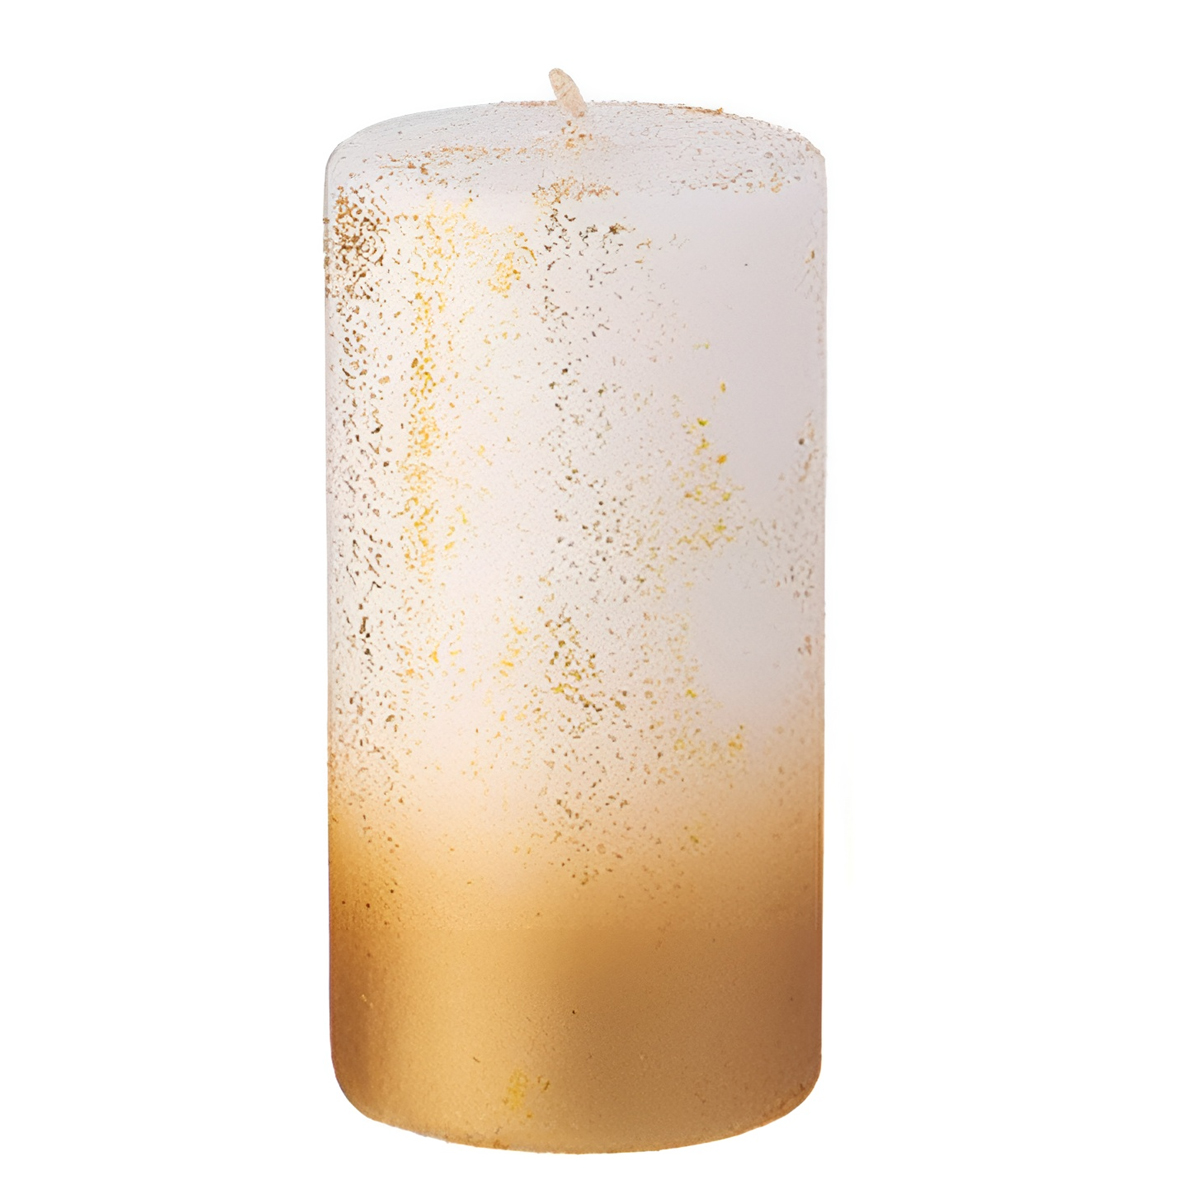 Свеча столбик Garda Decor 5x10см, цвет белый с золотом Garda Decor 315-326